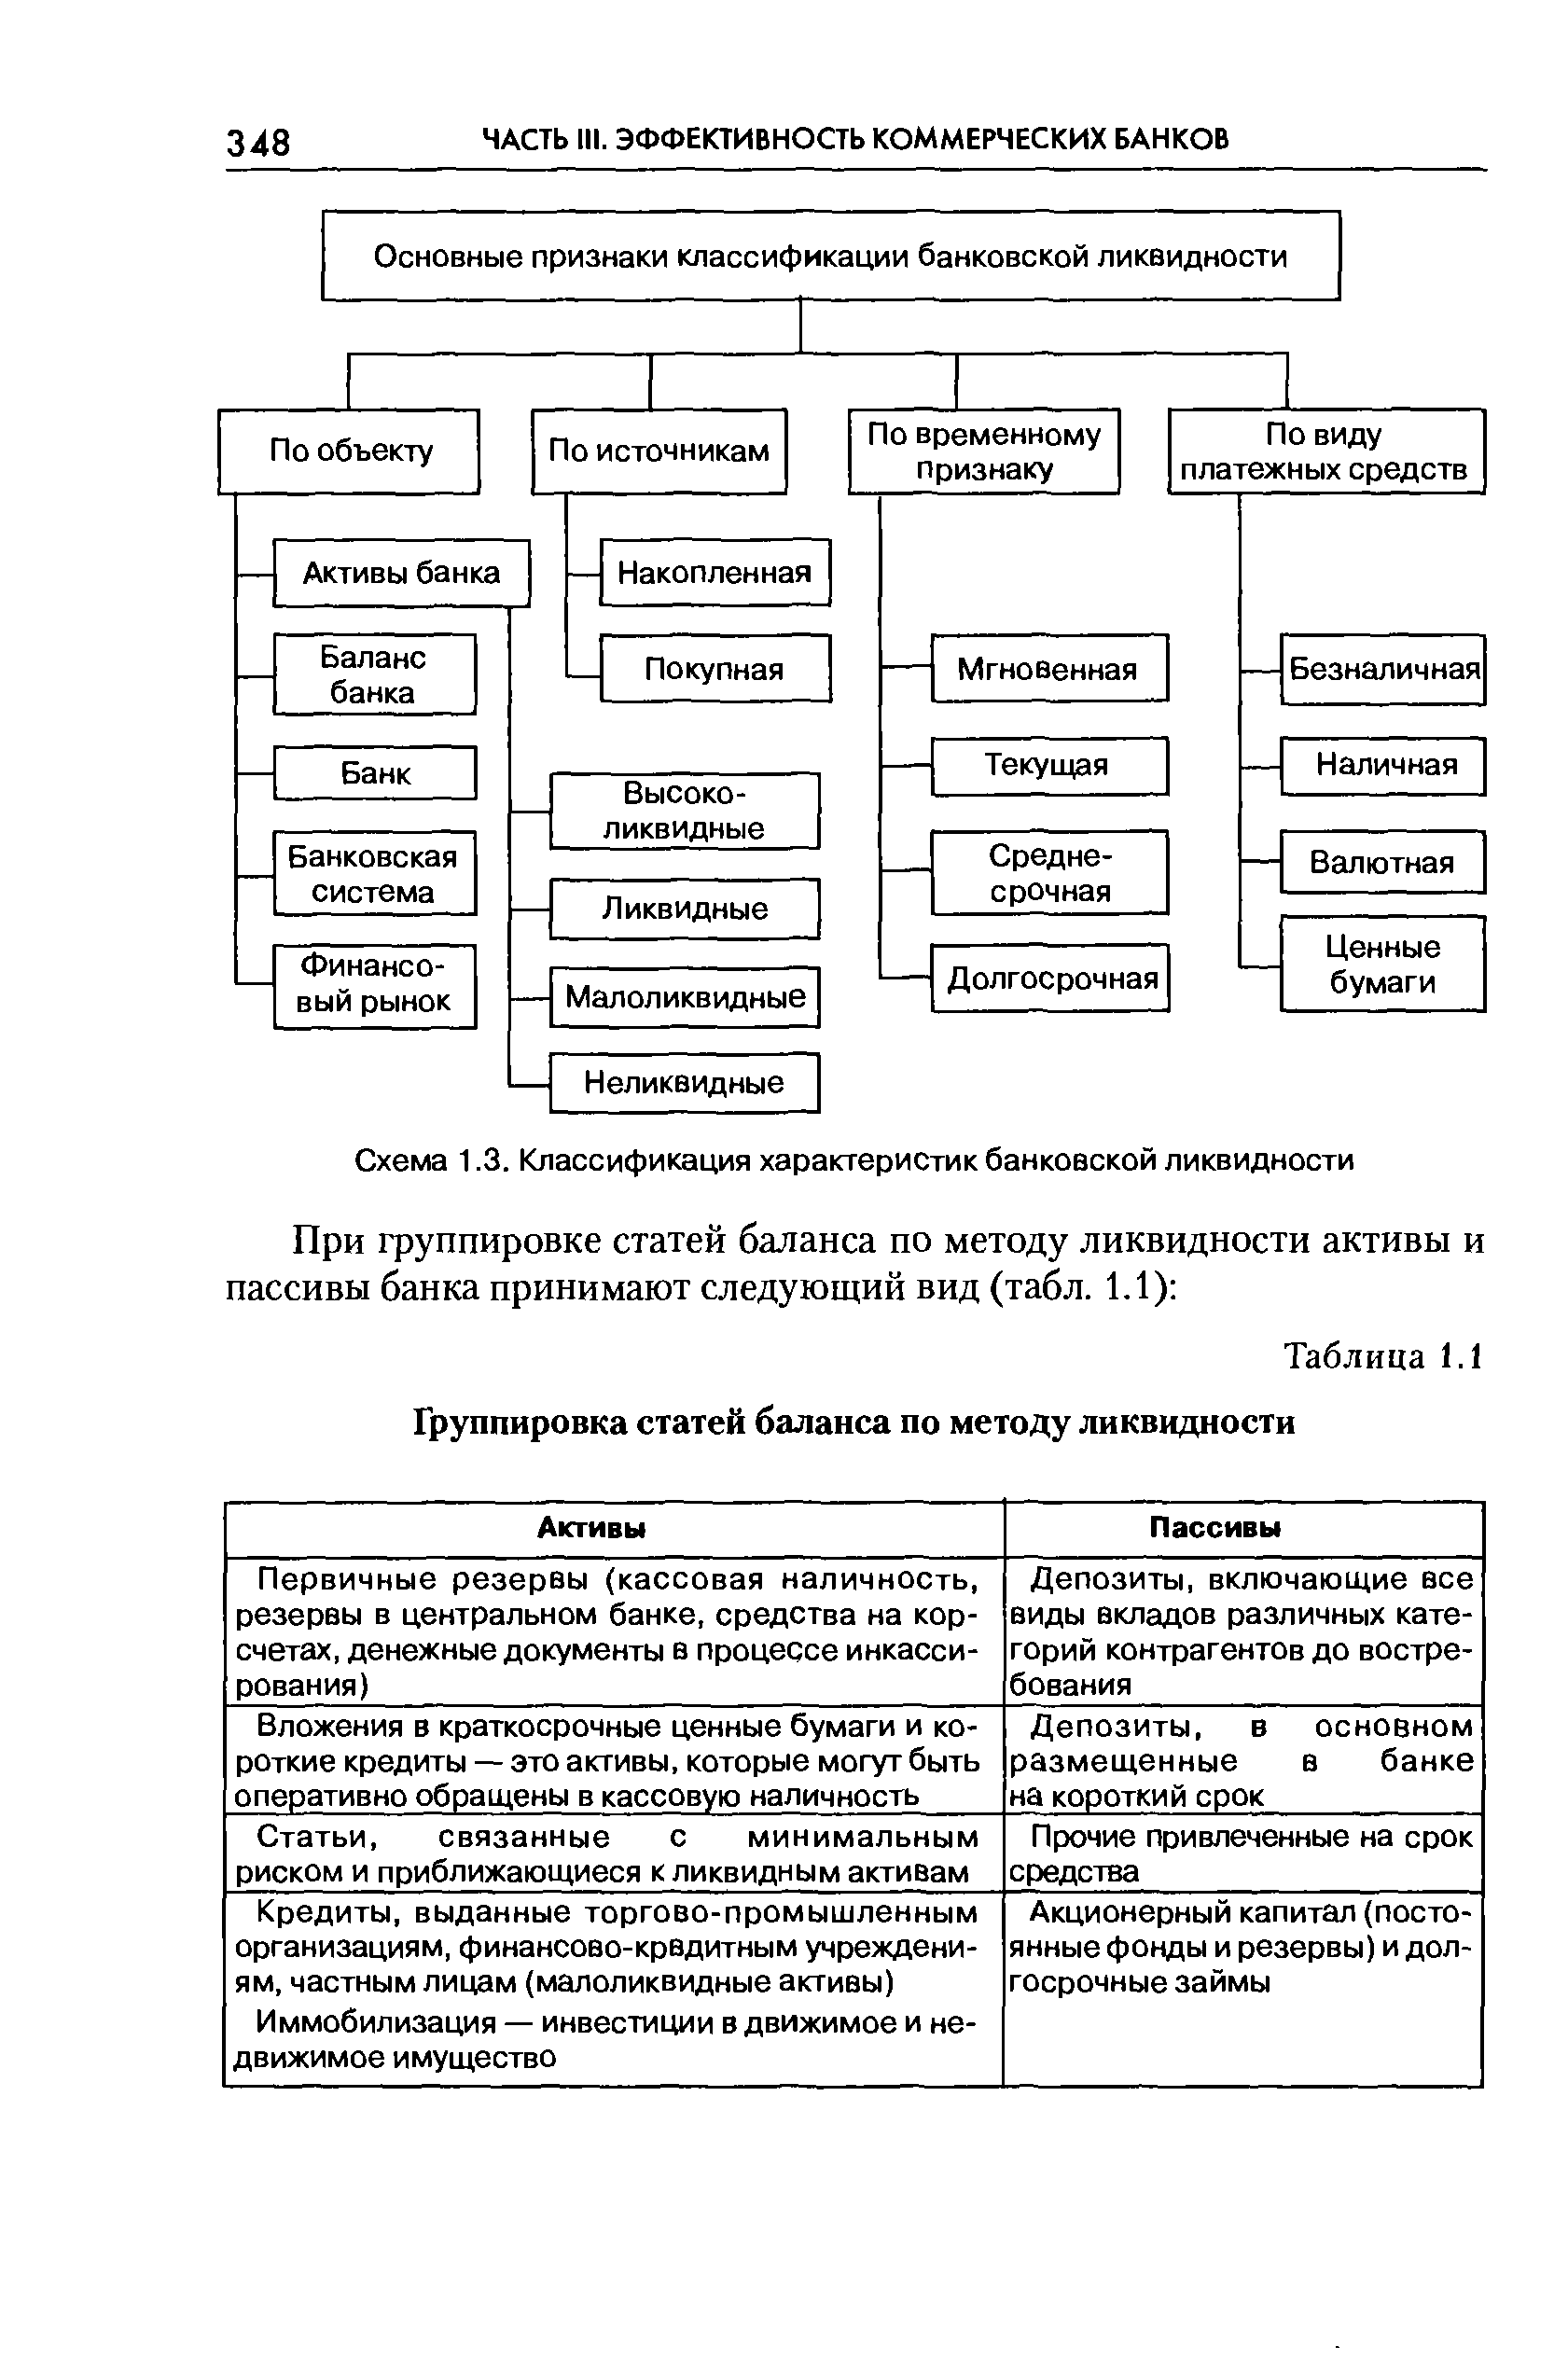 Таблица 1.1 Группировка статей баланса по методу ликвидности
